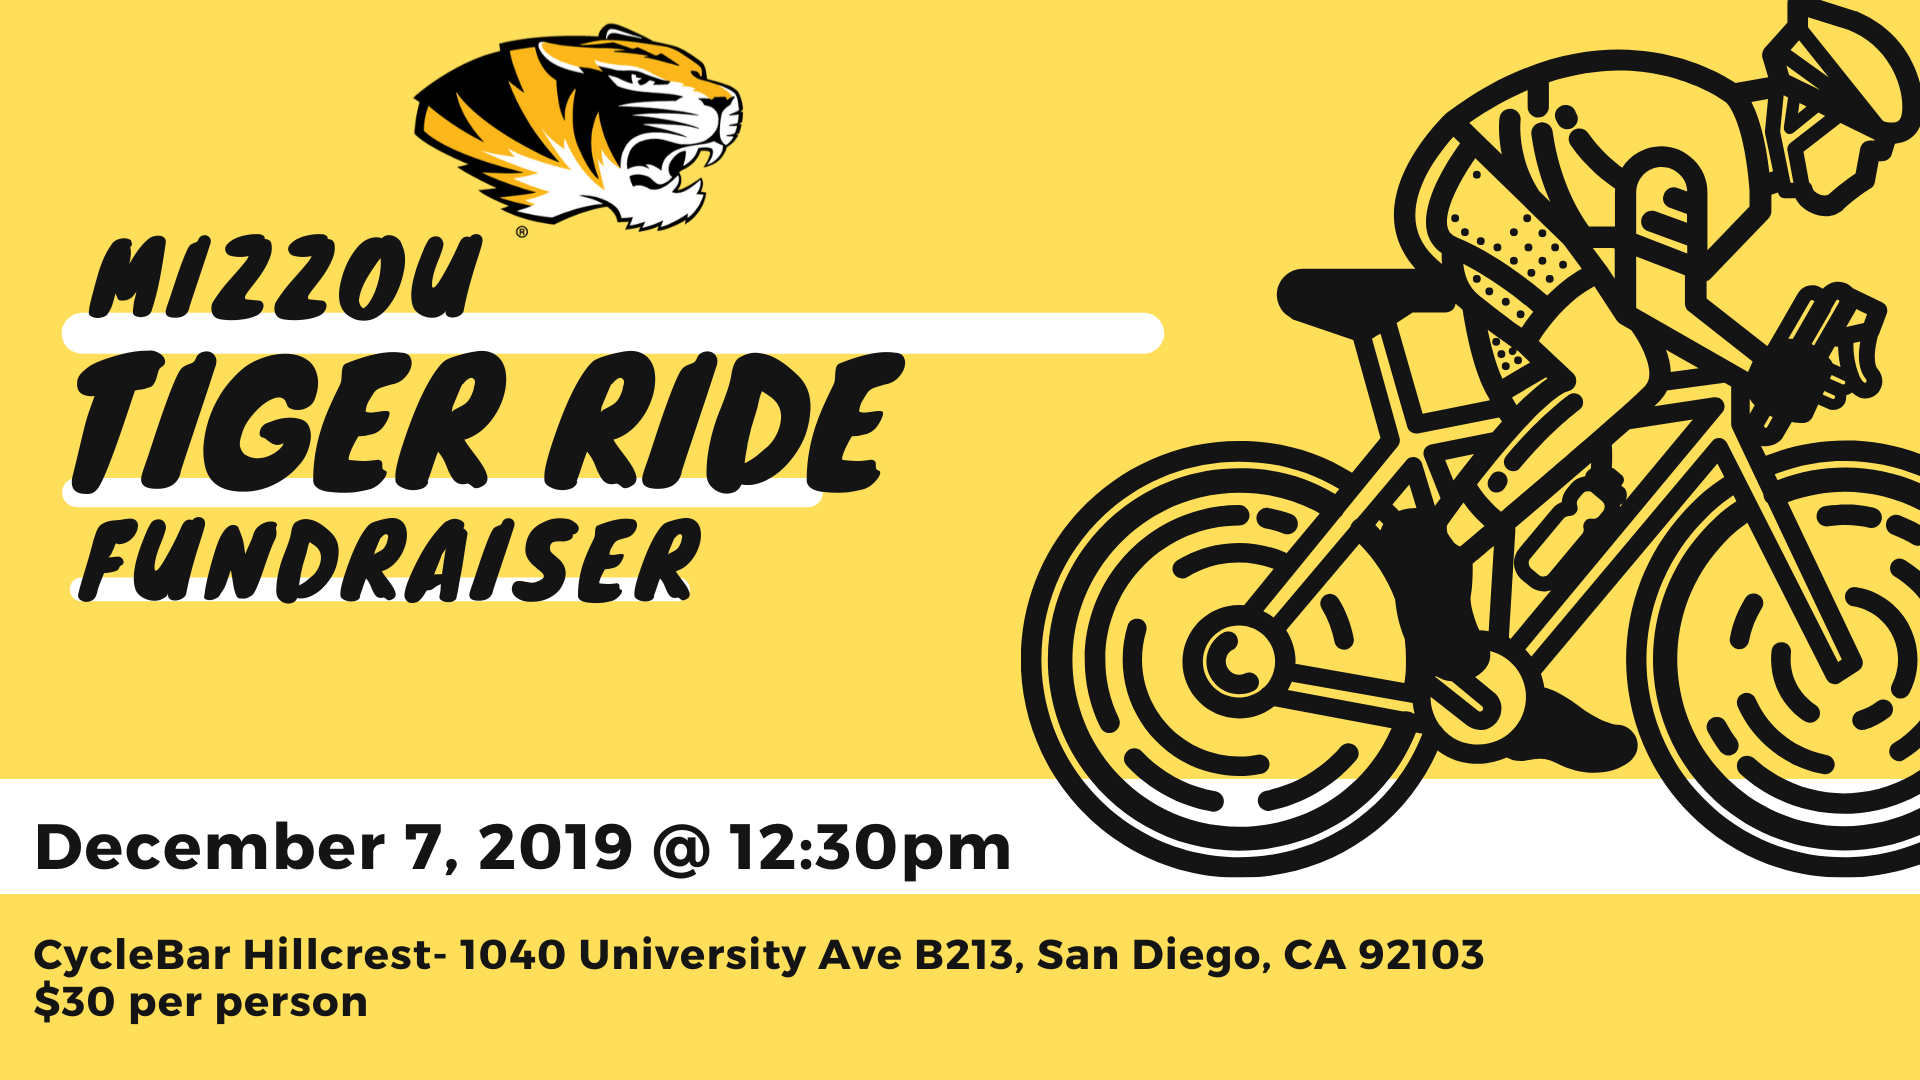 Mizzou Tiger Ride Fundraiser!